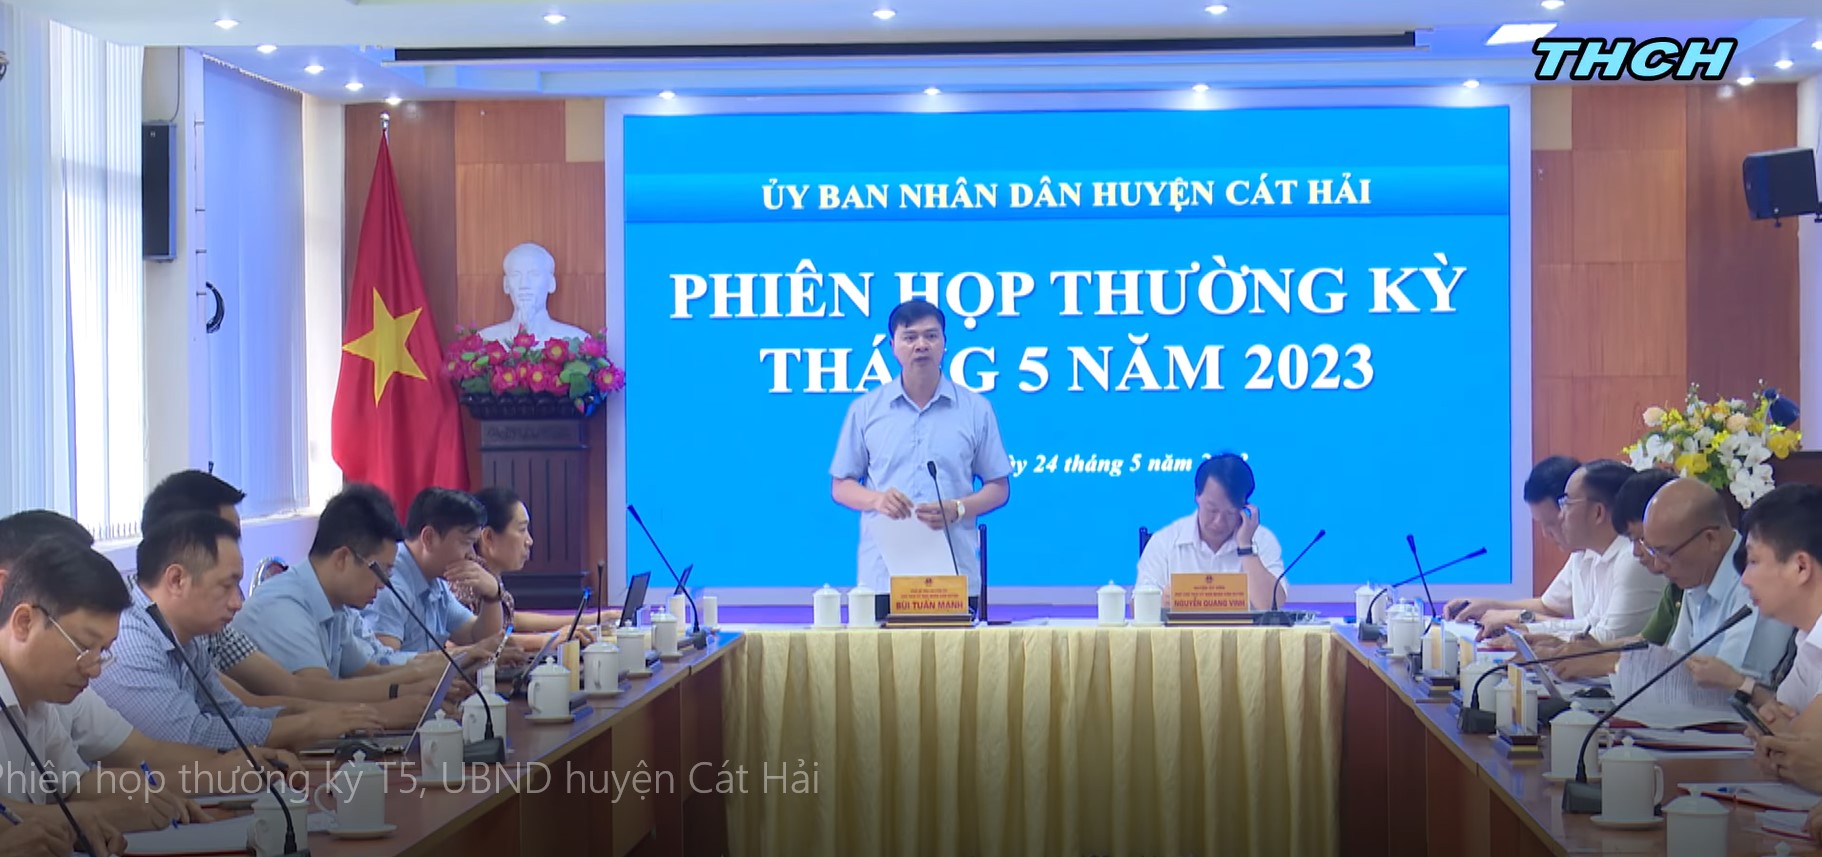 UBND huyện Cát Hải tổ chức phiên họp thường kỳ tháng 5/2023